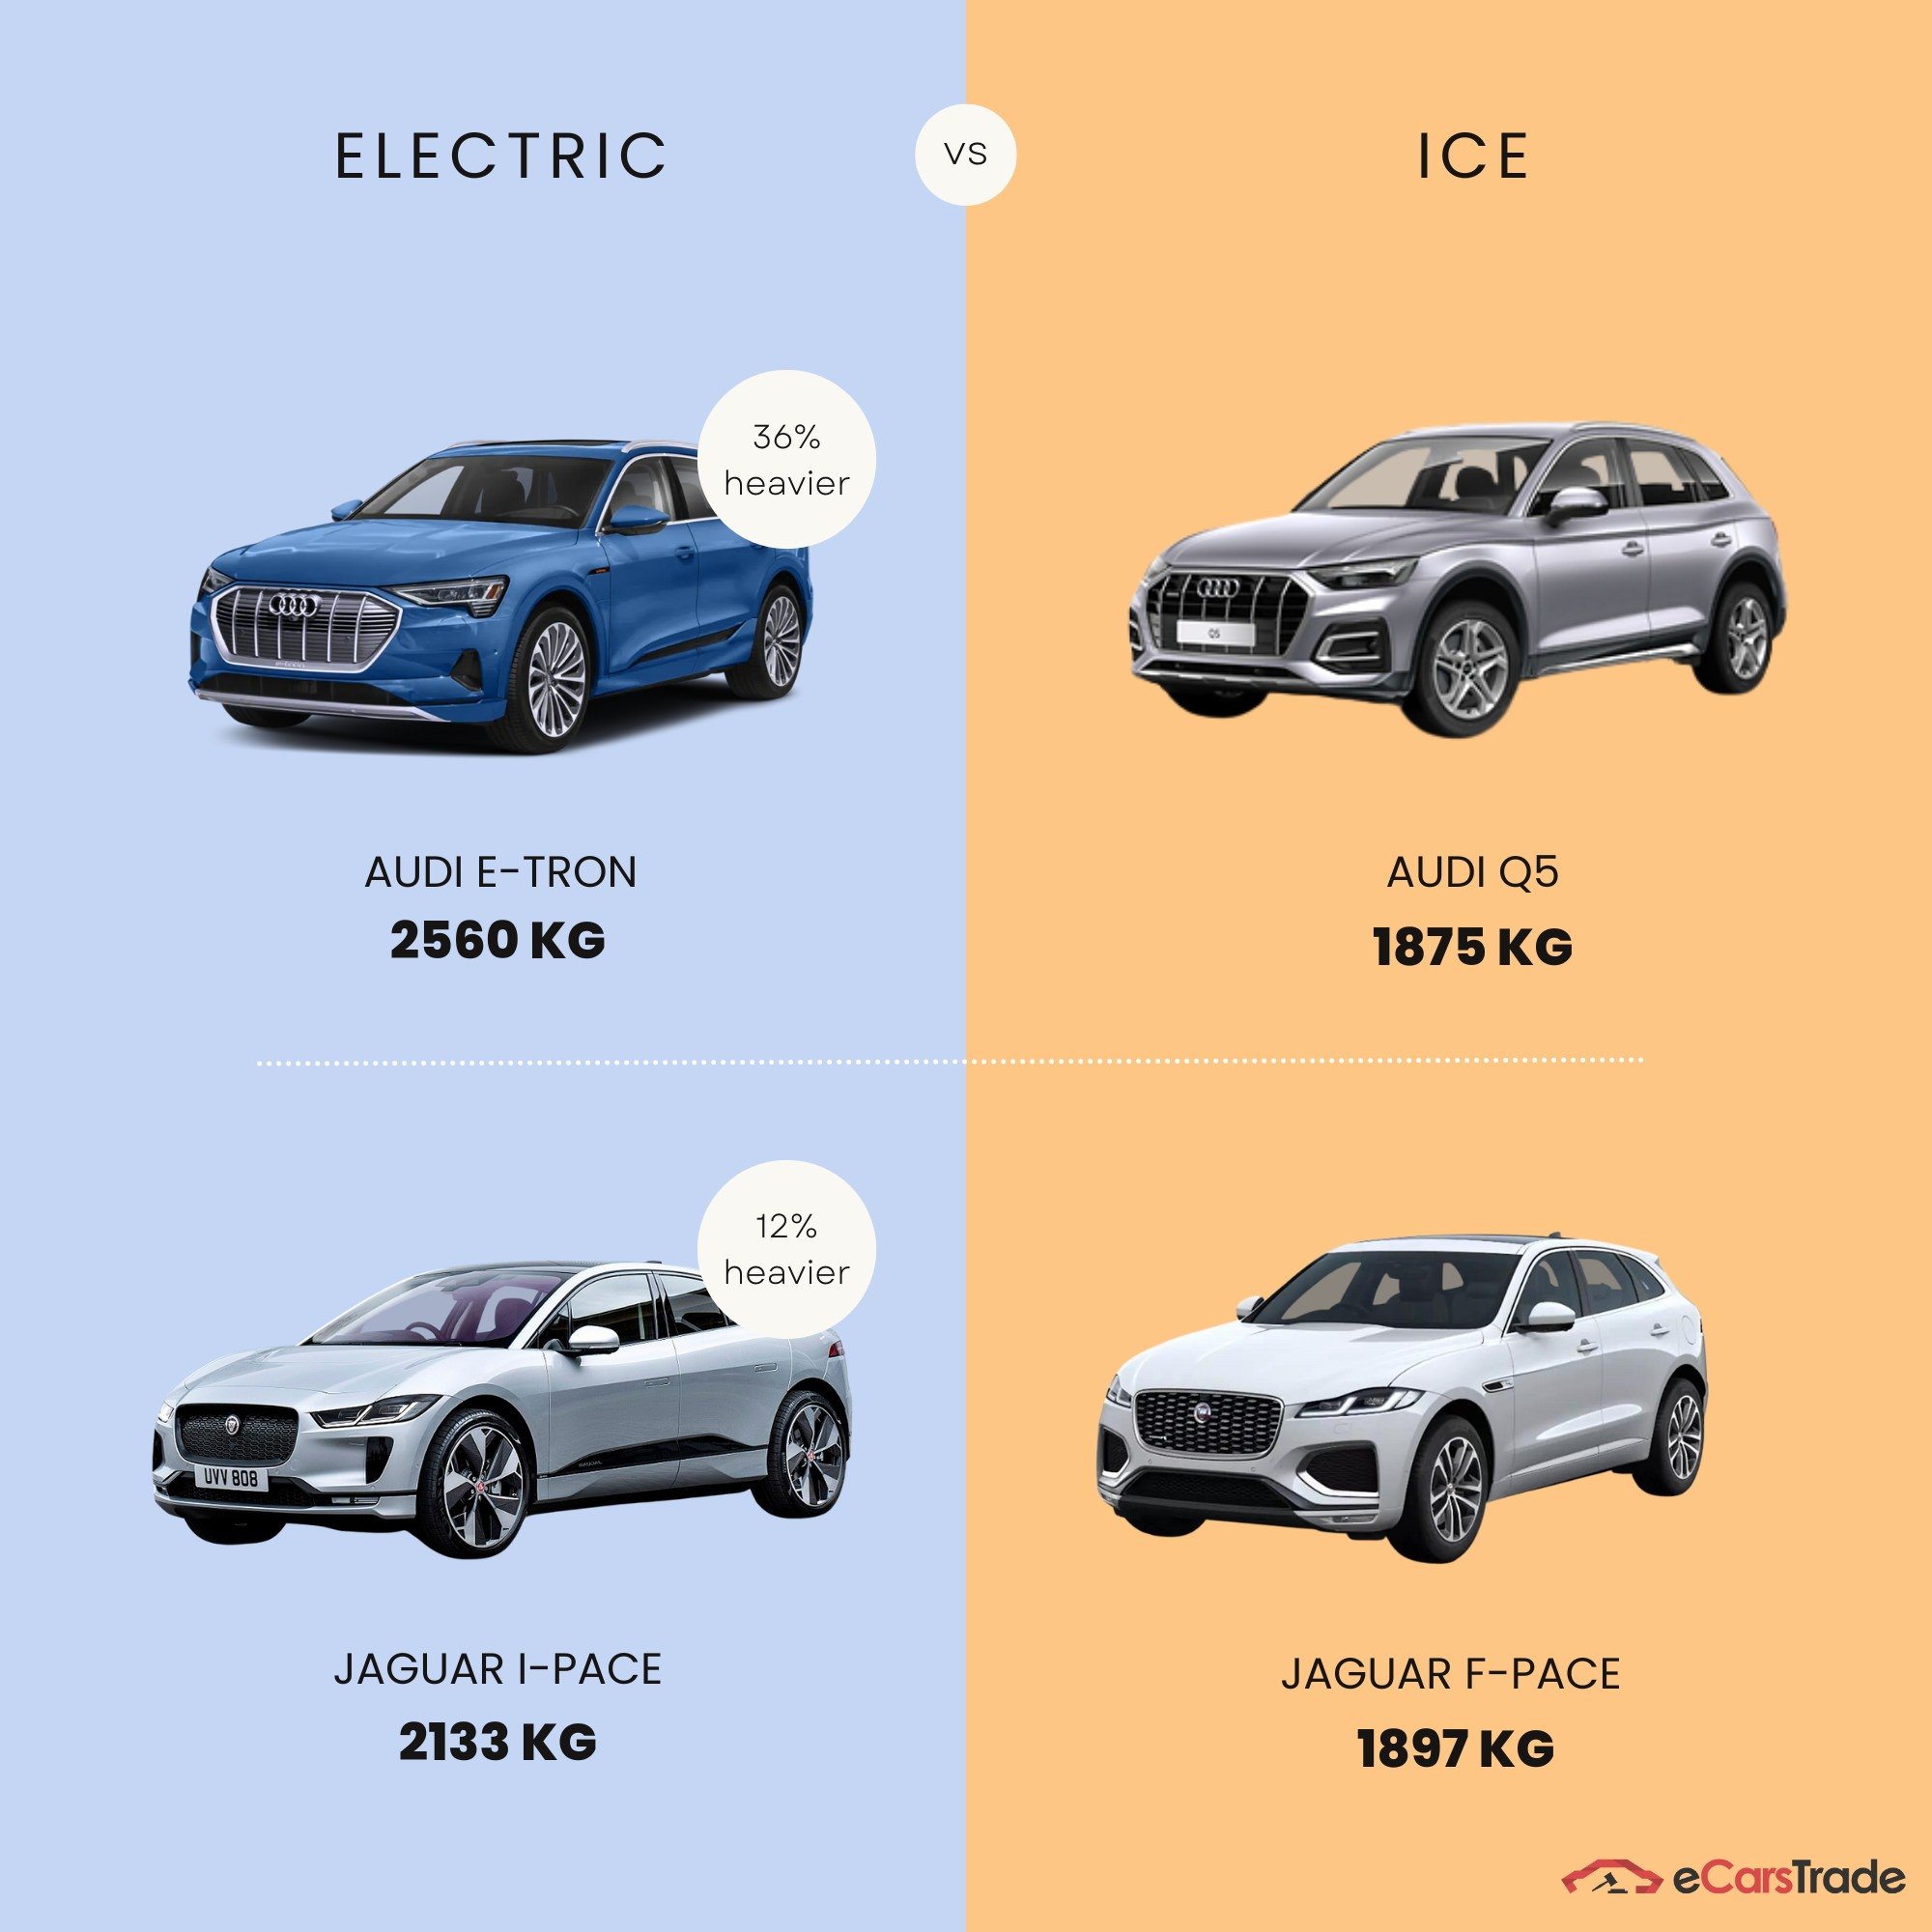 инфографика, показывающая разницу в весе между электромобилями и автомобилями с ДВС